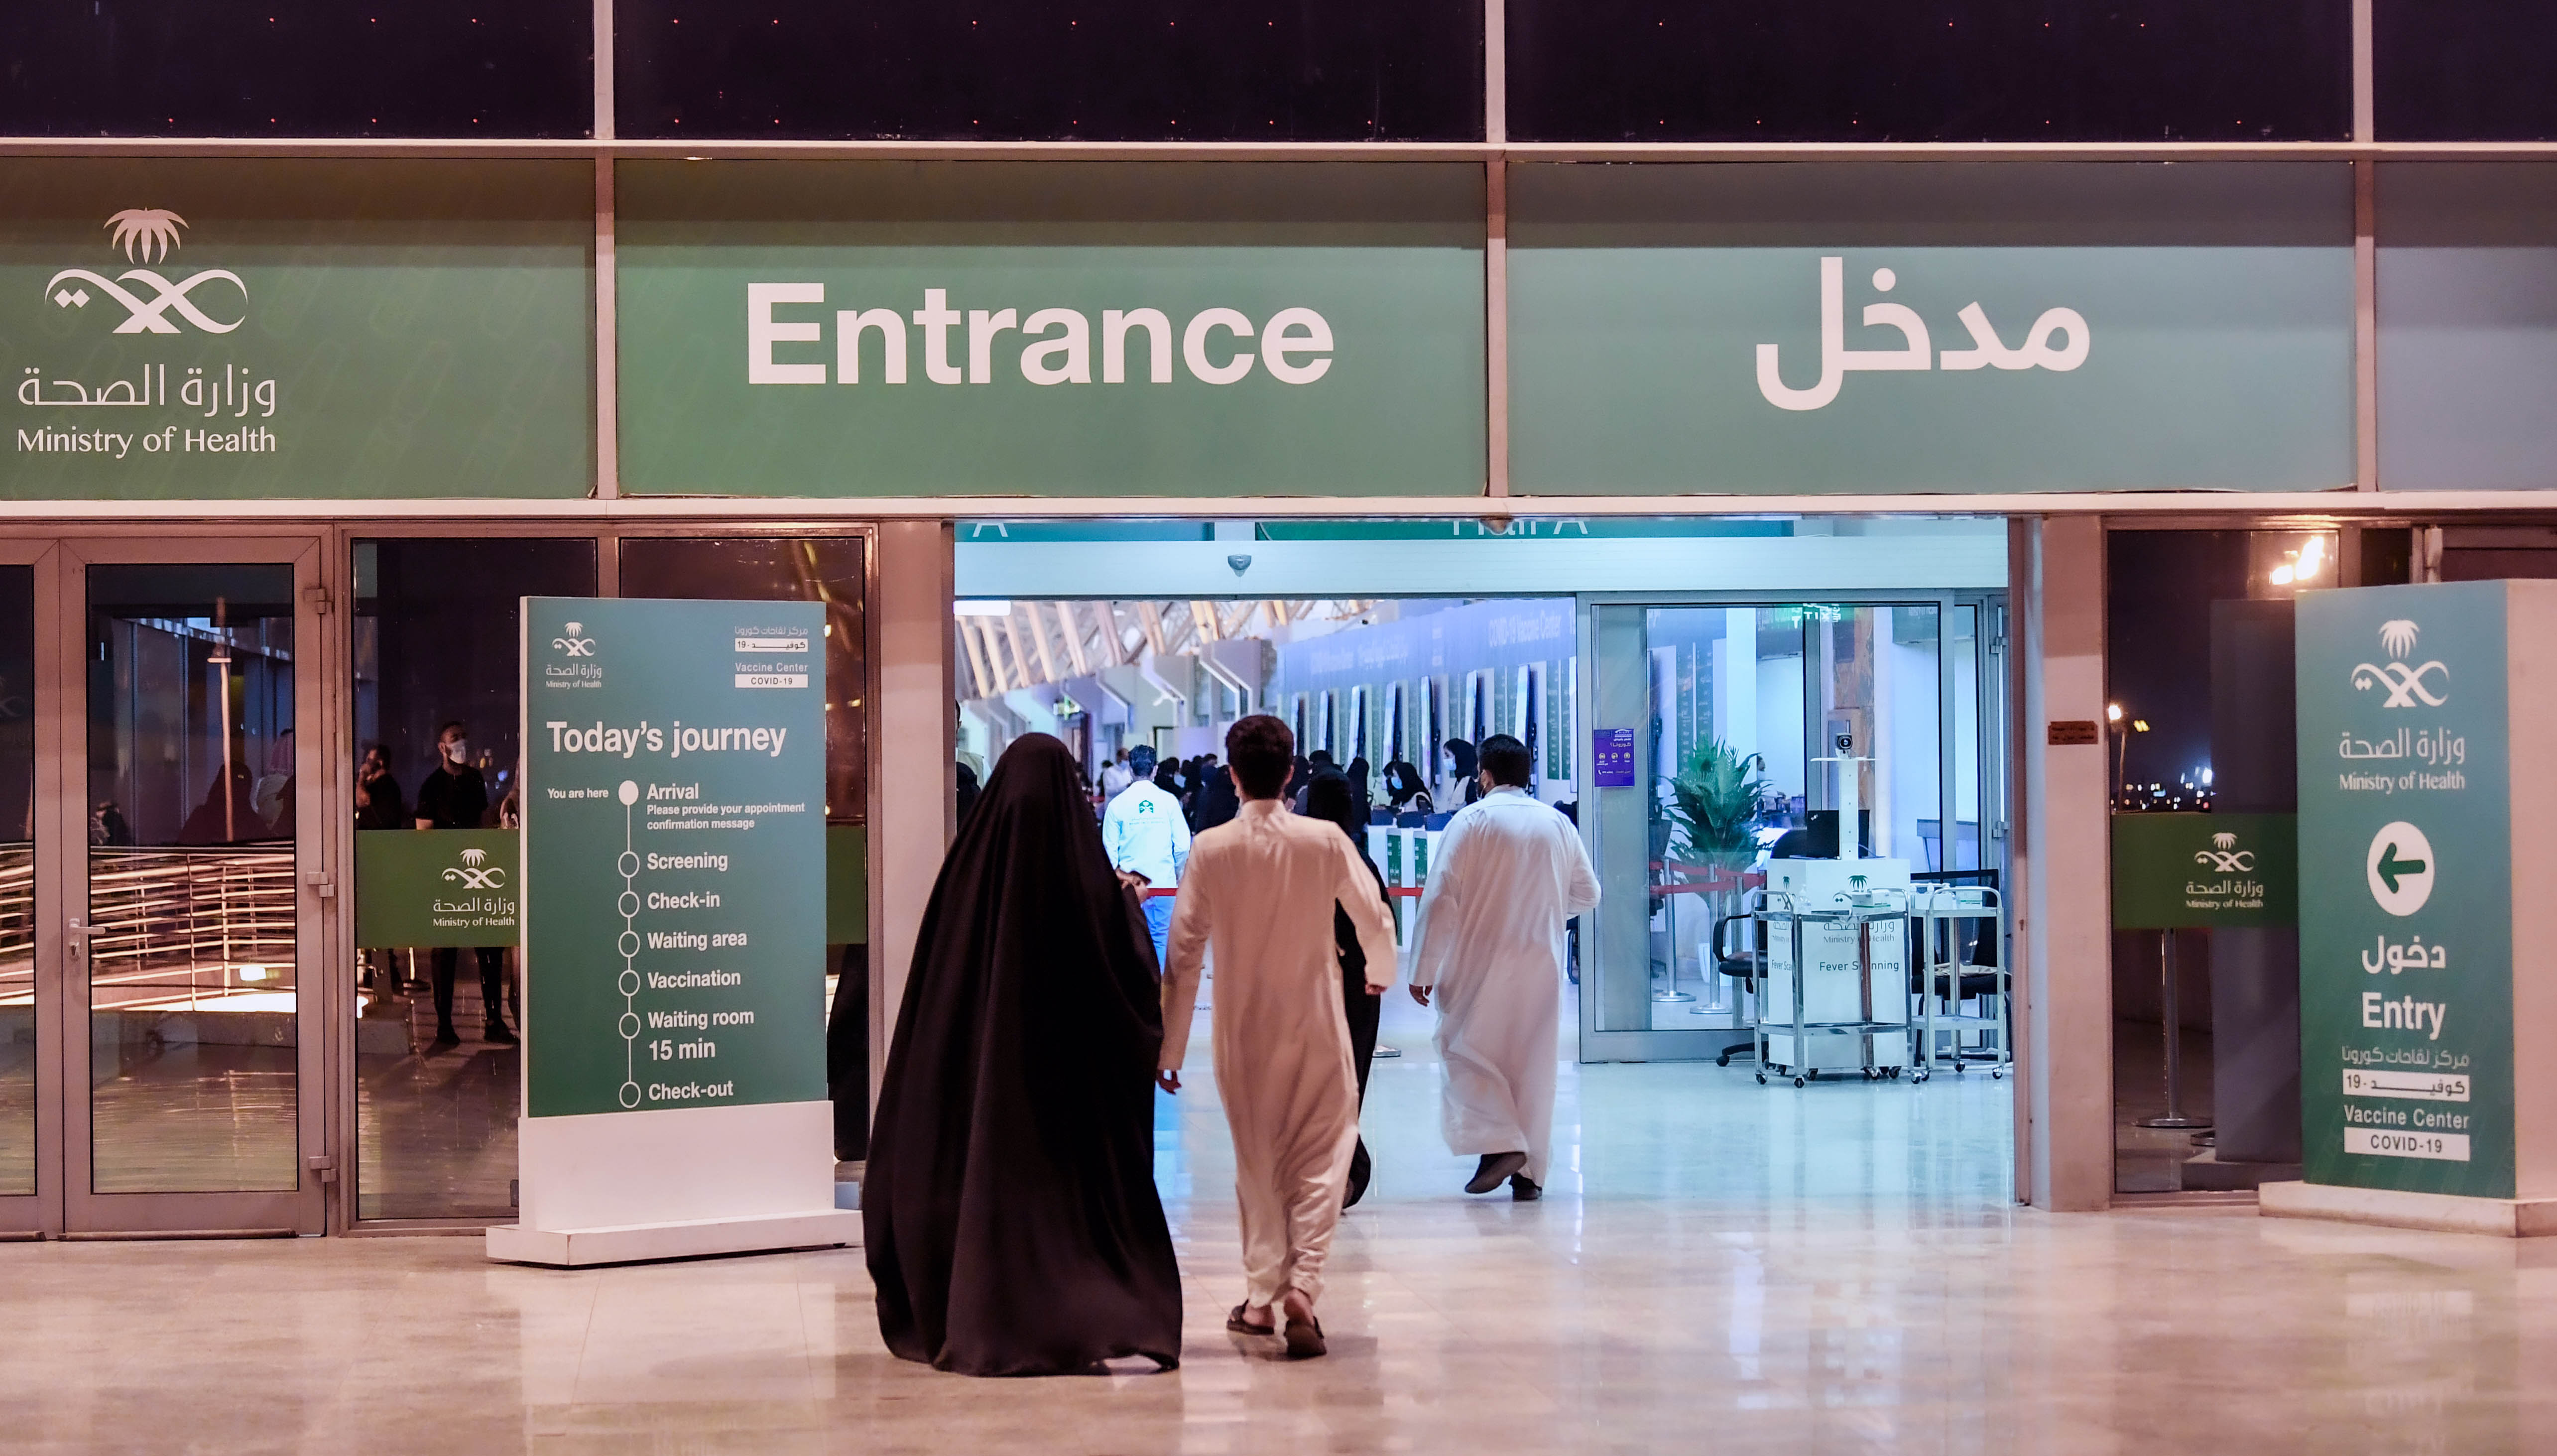 تحولت قاعة المعارض في الرياض إلى أكبر مركز لتوزيع اللقاح (اندبندنت عربية - بشير صالح)